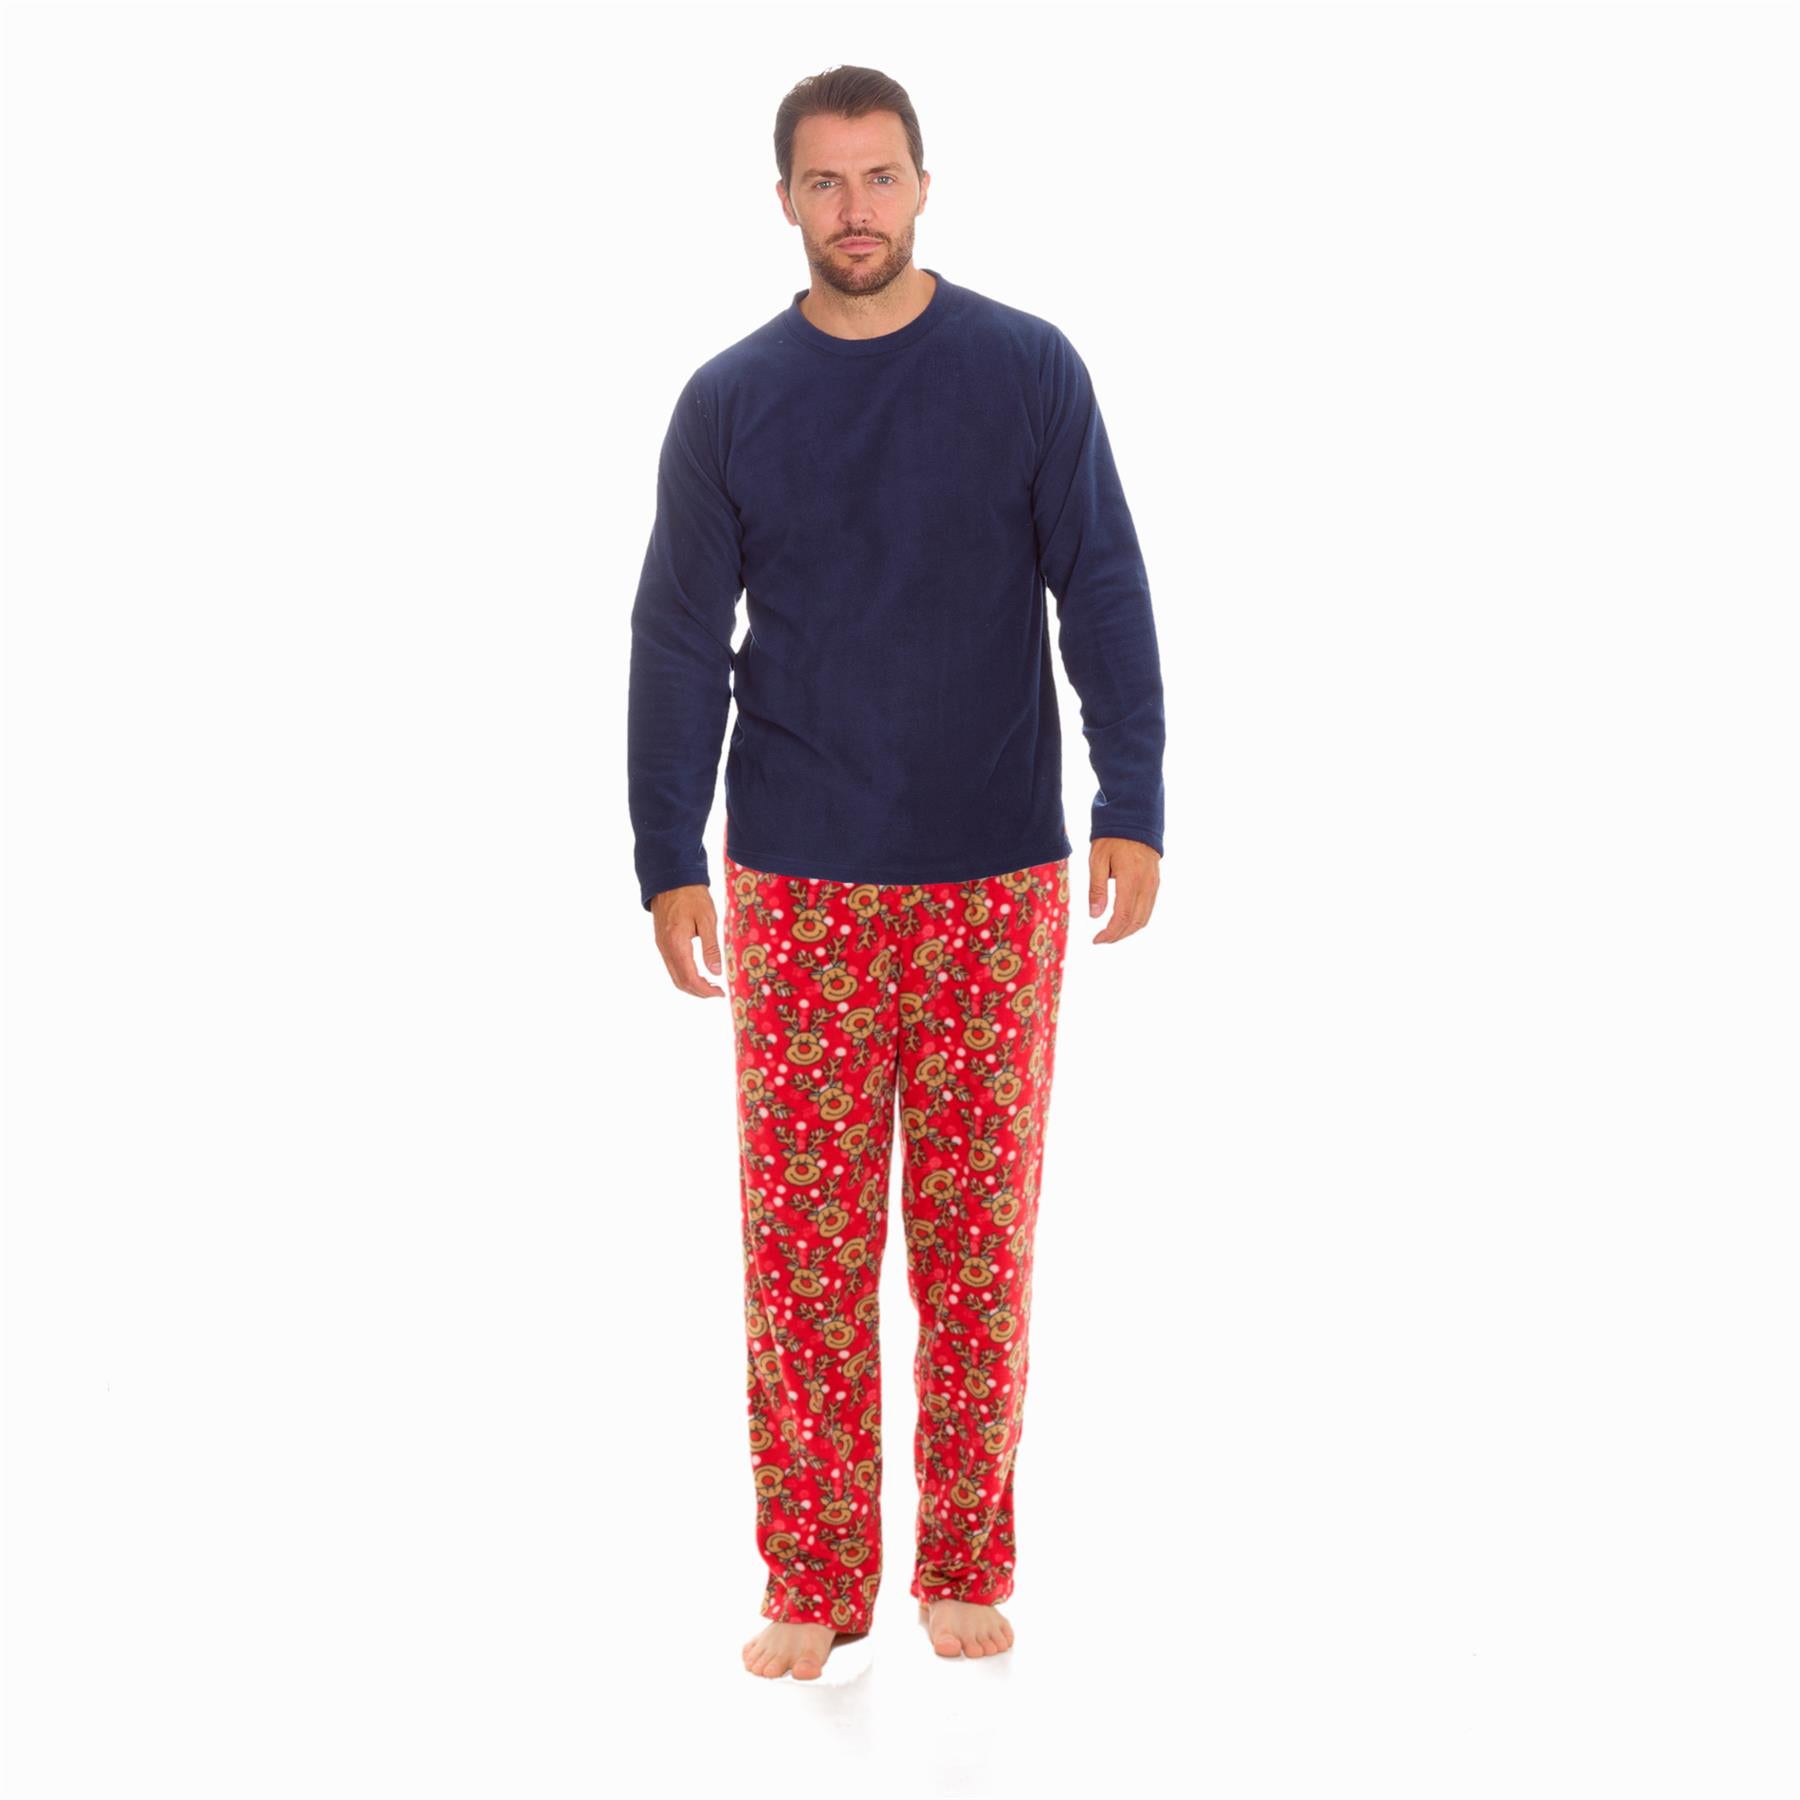 Red - Navy Mens Christmas Pyjamas Set